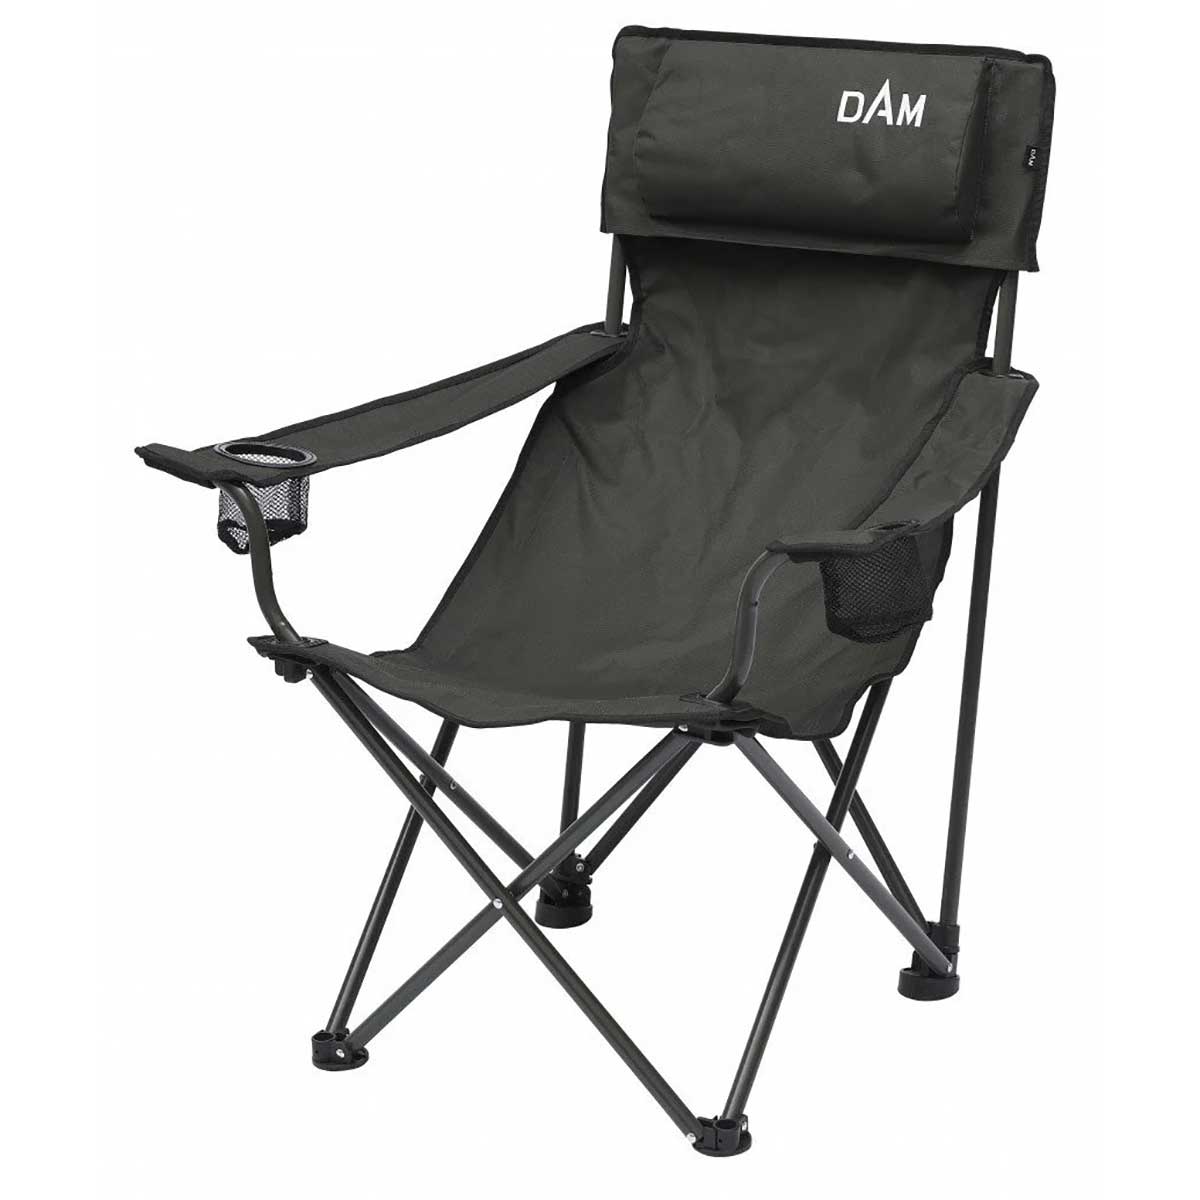 Dam Foldable Chair 130 Kg Sandalye,dam kalitesinde 130kg a kadar ağırlıkta bir kişiyi taşıyabilecek kalitede sandalye serisi.